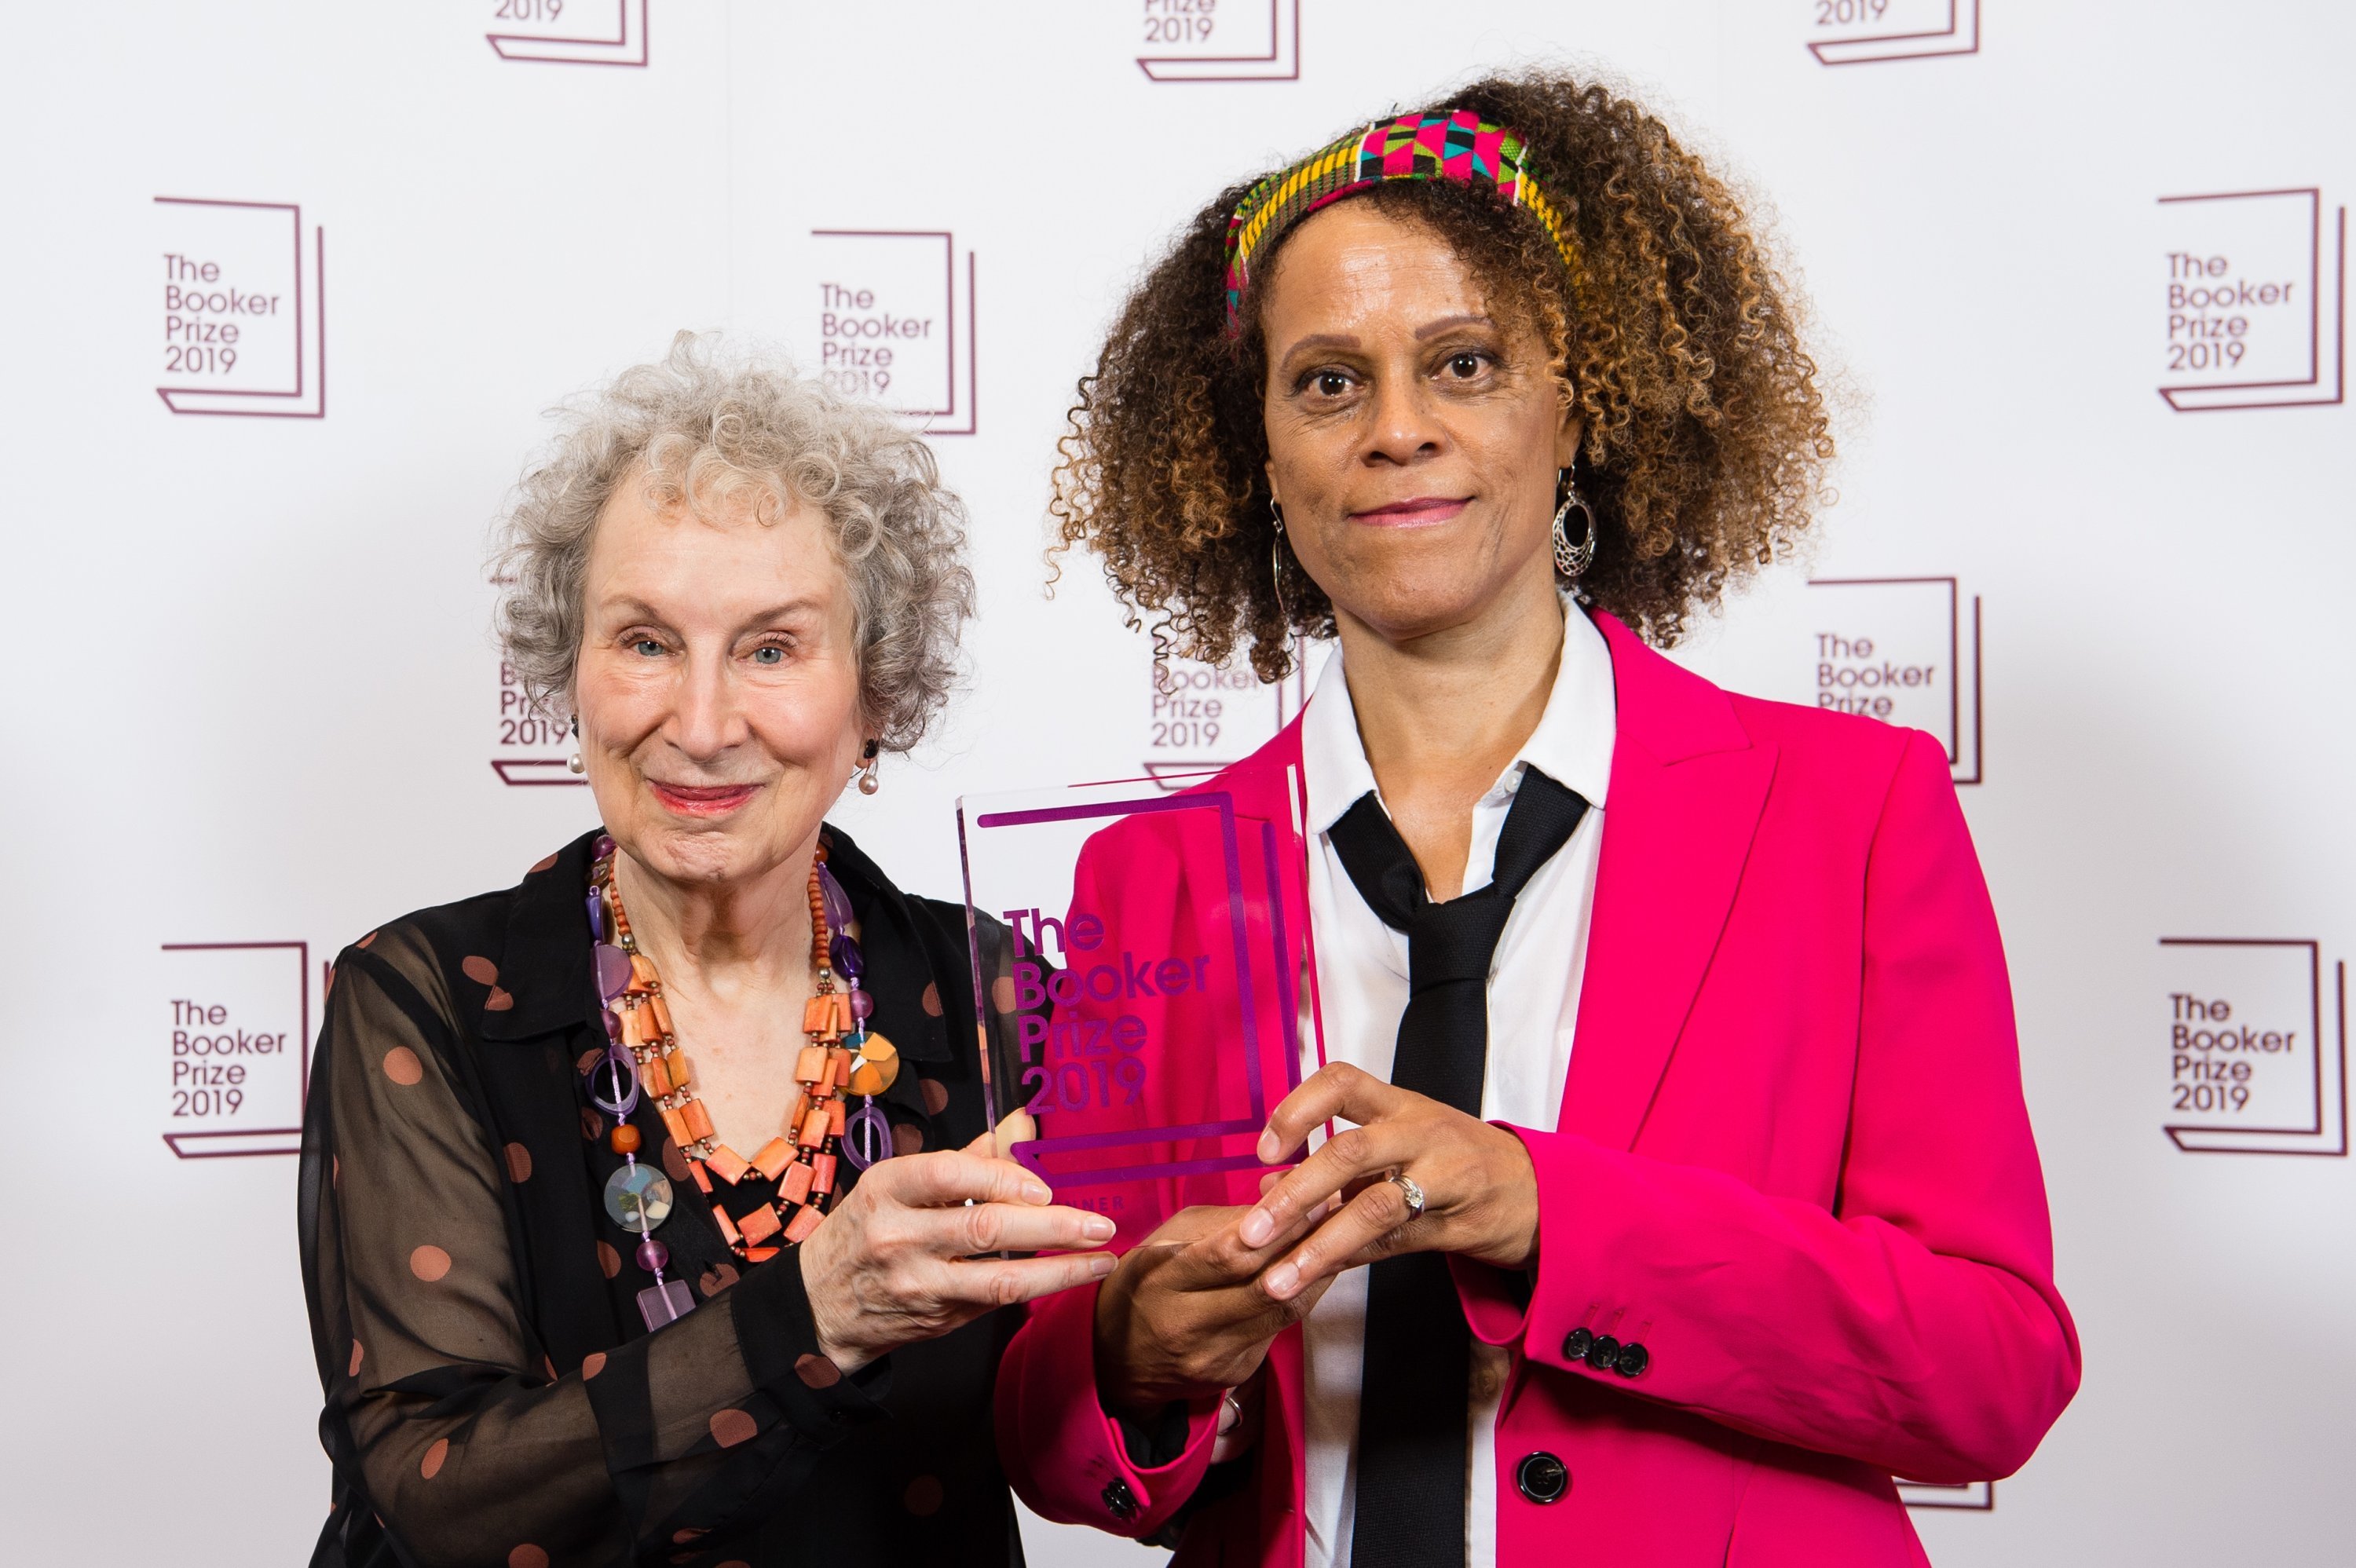 Pemenang bersama Margaret Atwood (kiri) dan Bernardine Evaristo selama sesi pemotretan Pengumuman Pemenang Booker Prize 2019 di Guildhall, London, Inggris, 14 Oktober 2019. (Getty Images)